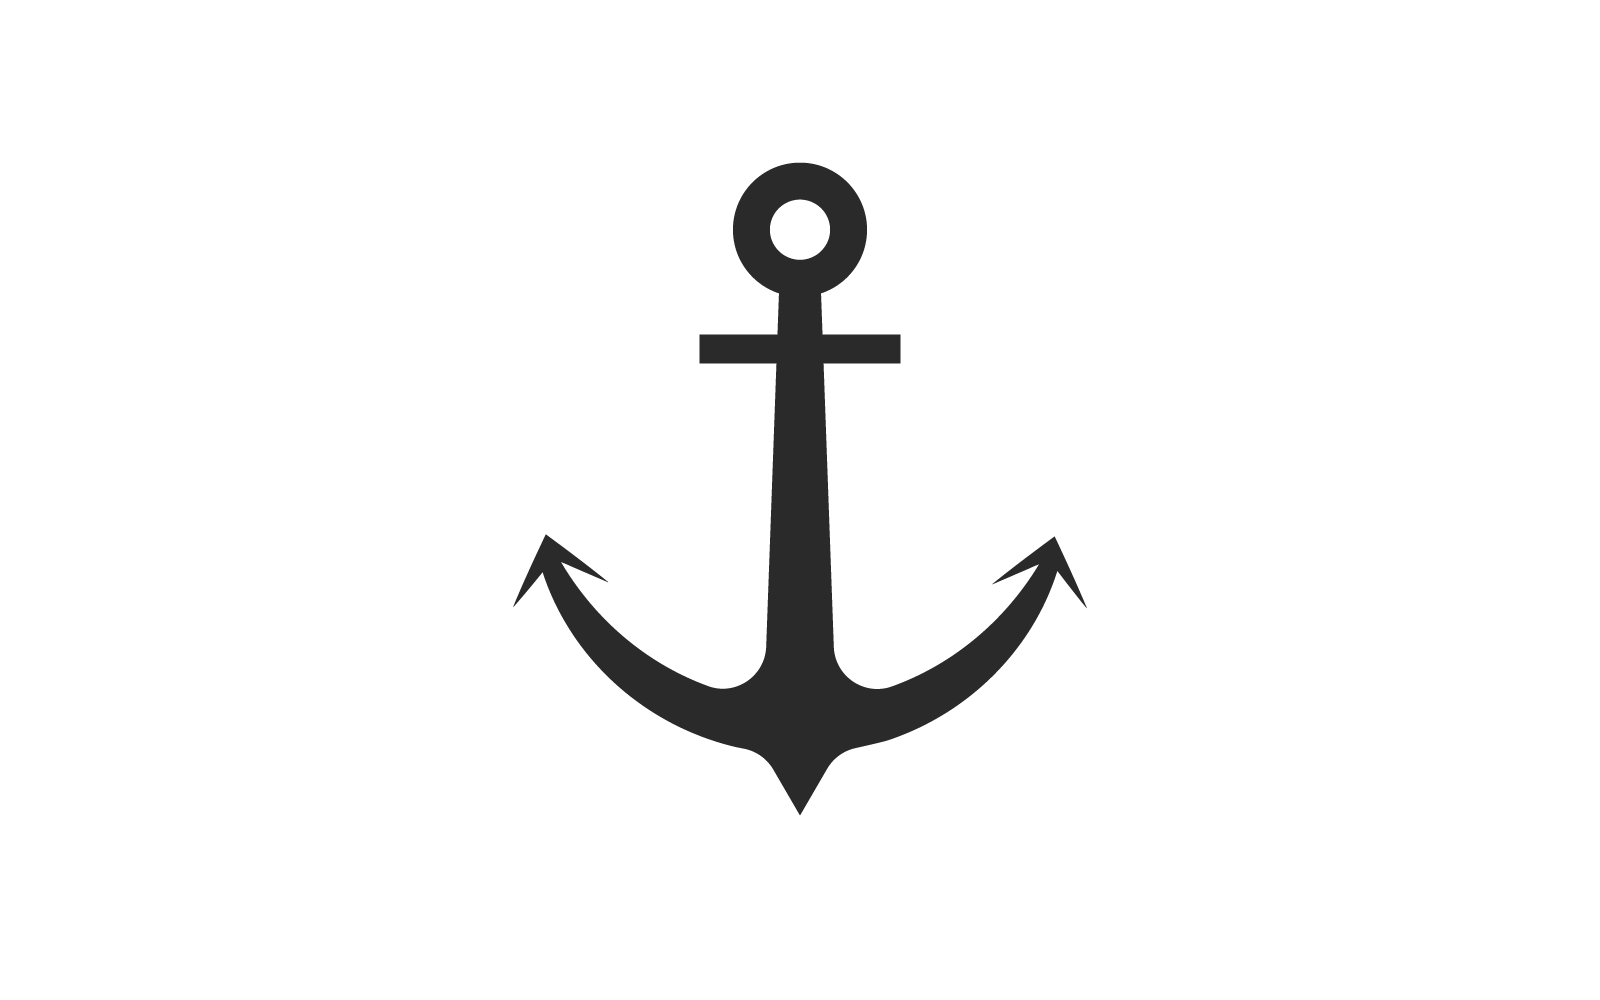 Anchor design logo illustration template vector design